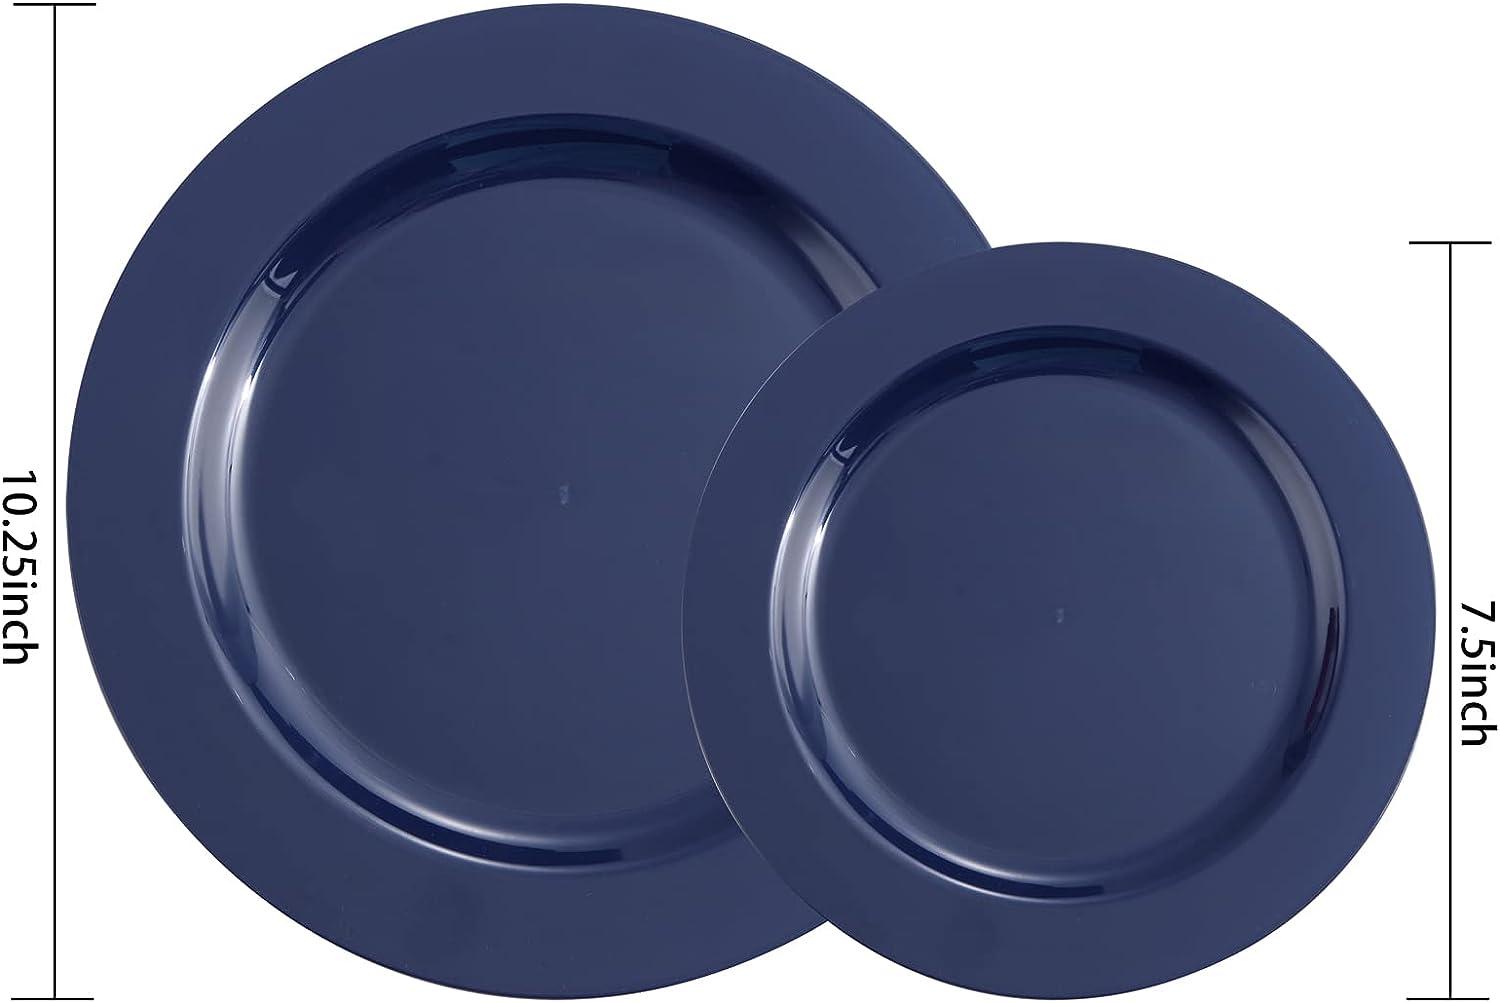 FLOWERCAT 60PCS Plates - Heavy Duty Plastic Plates Disposable for